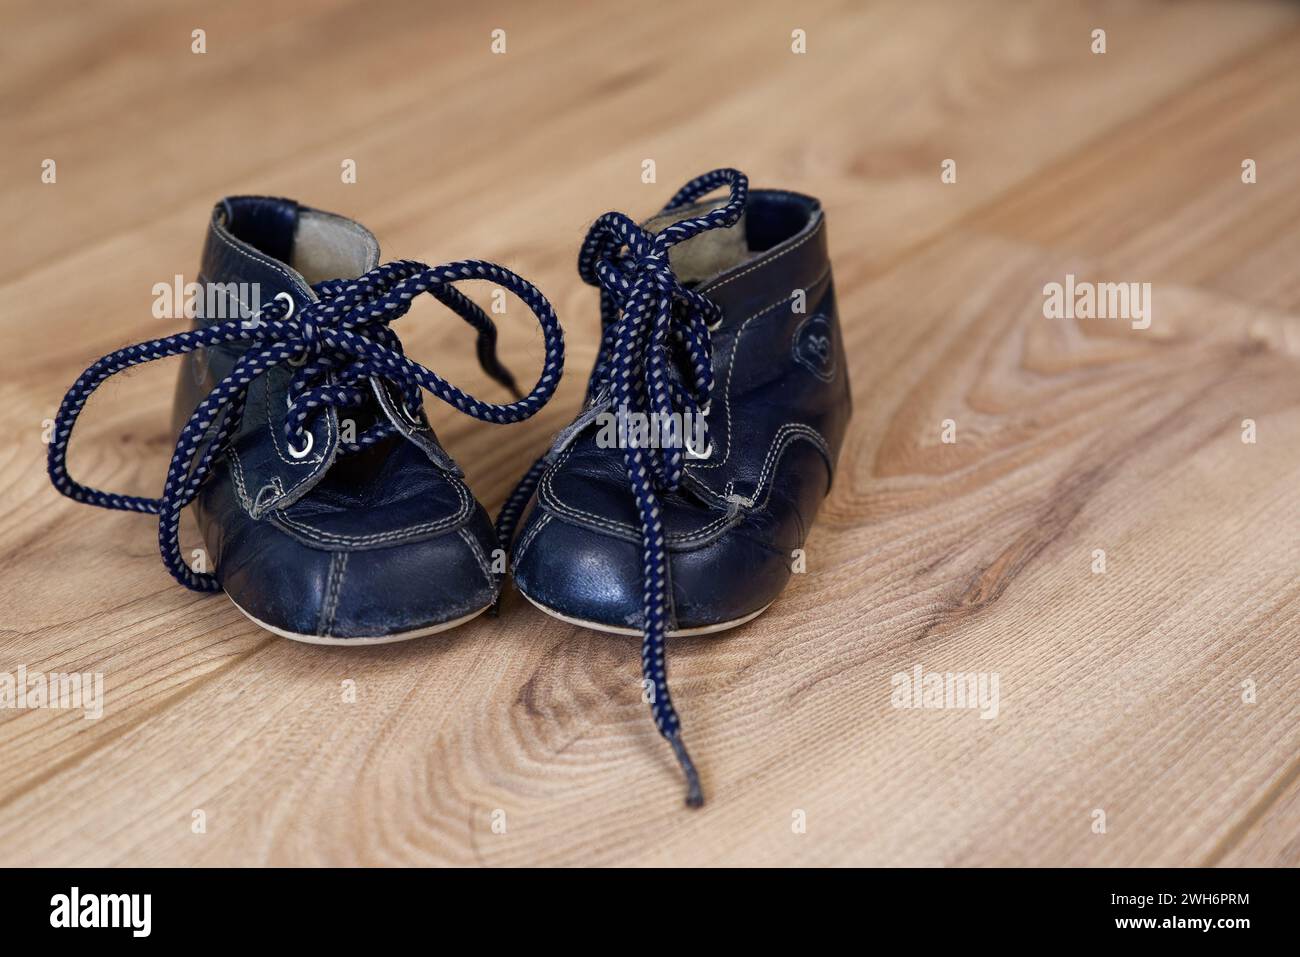 Navy blue vinage baby shoe Stock Photo